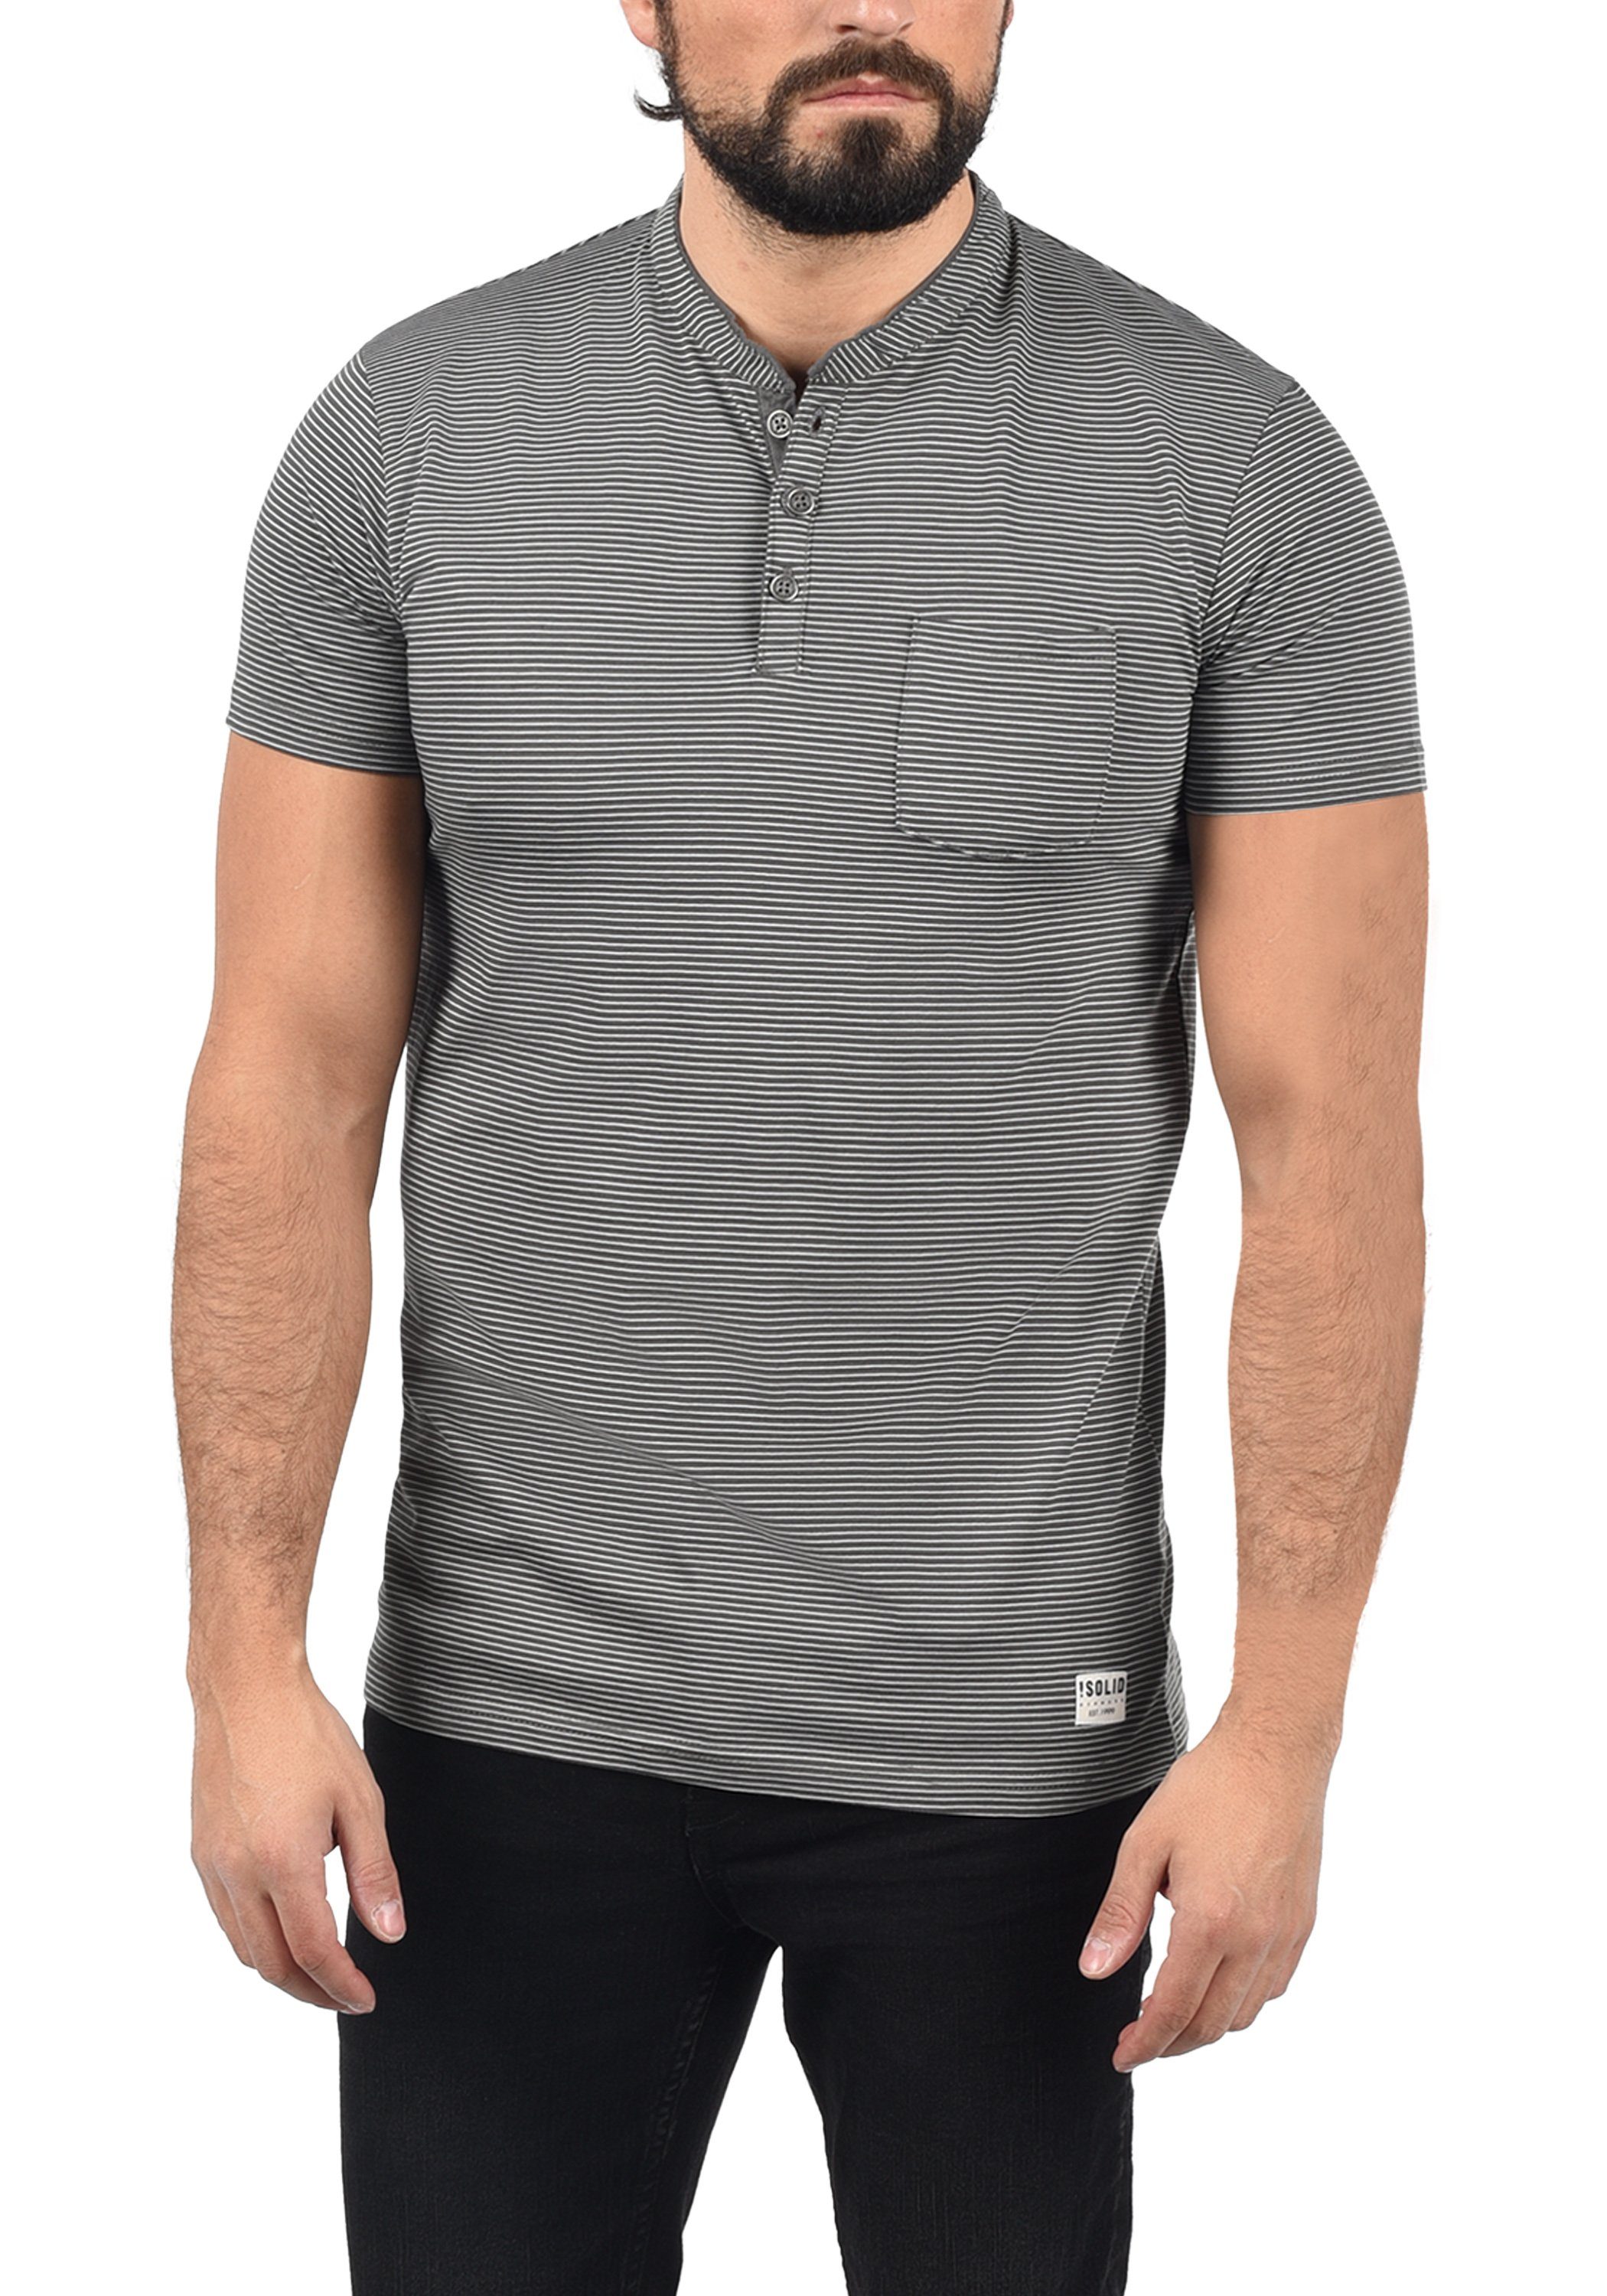 !Solid Rundhalsshirt T-Shirt (8288) Grey Melange SDAlfi Dark